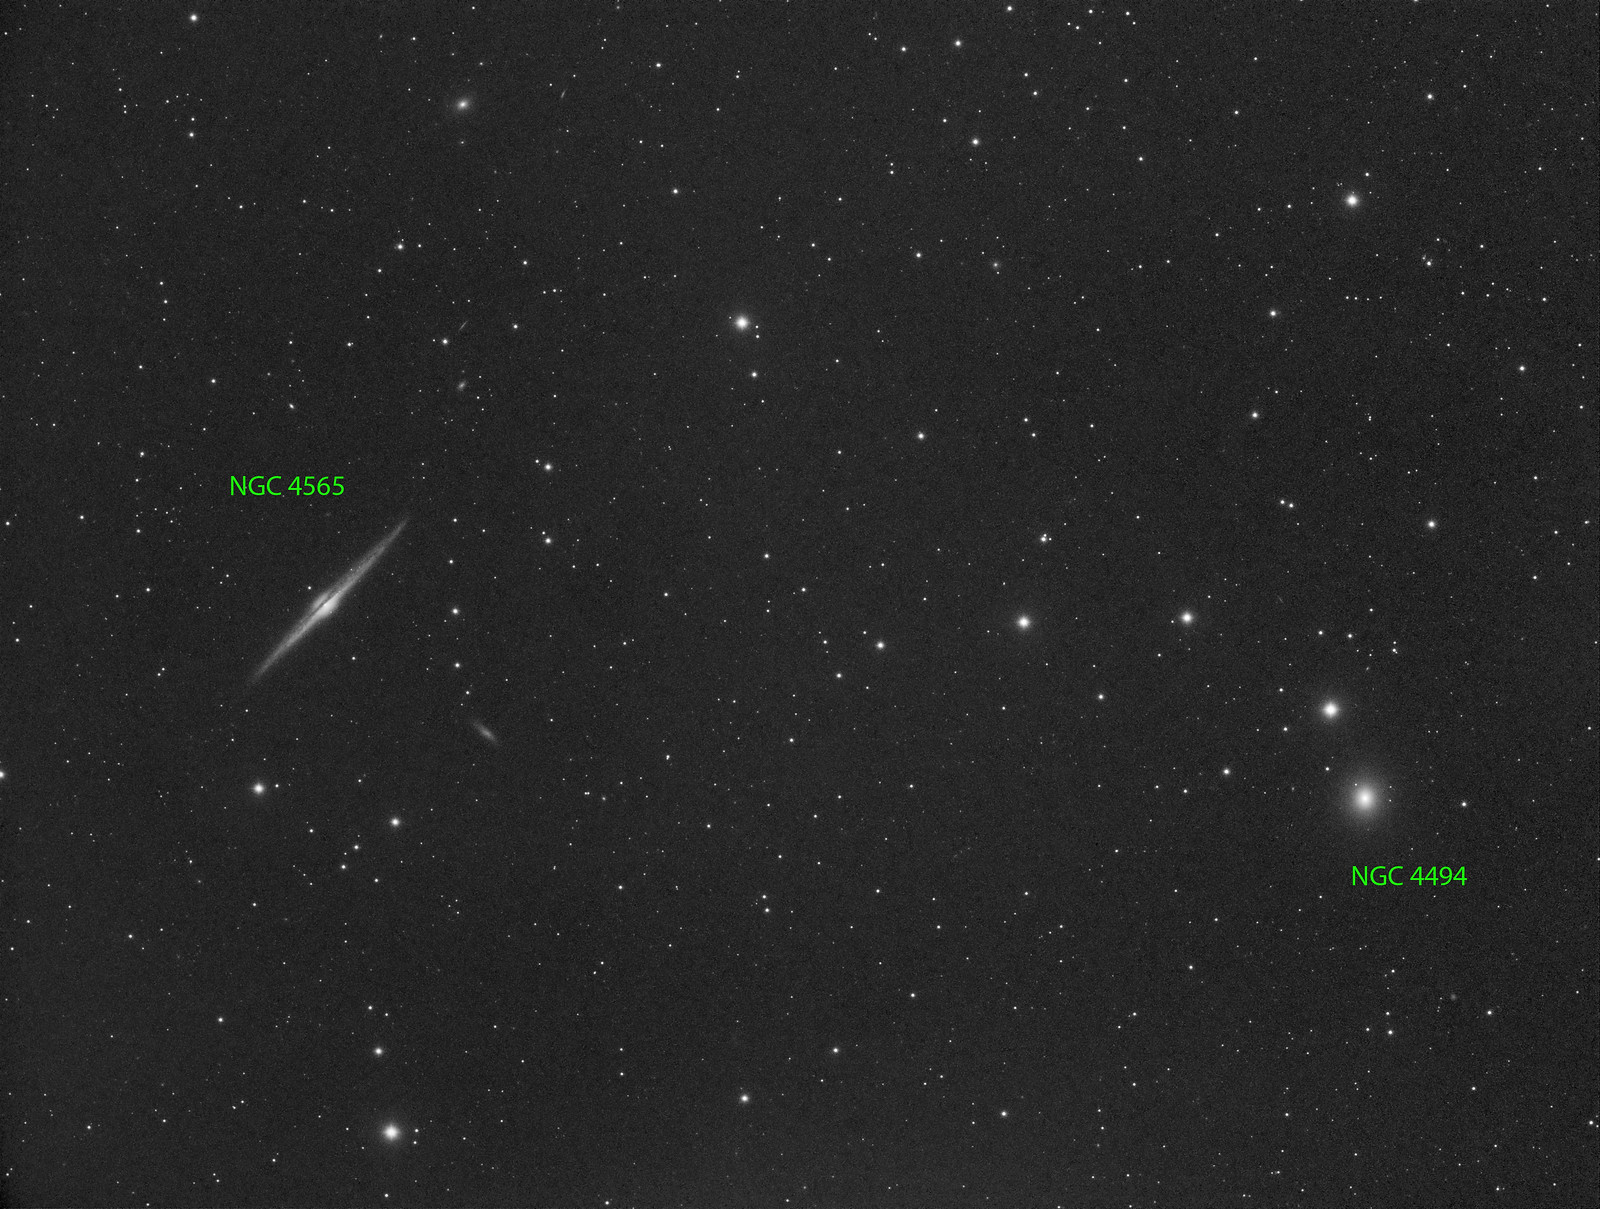 038 - NGC 4565  - Luminance